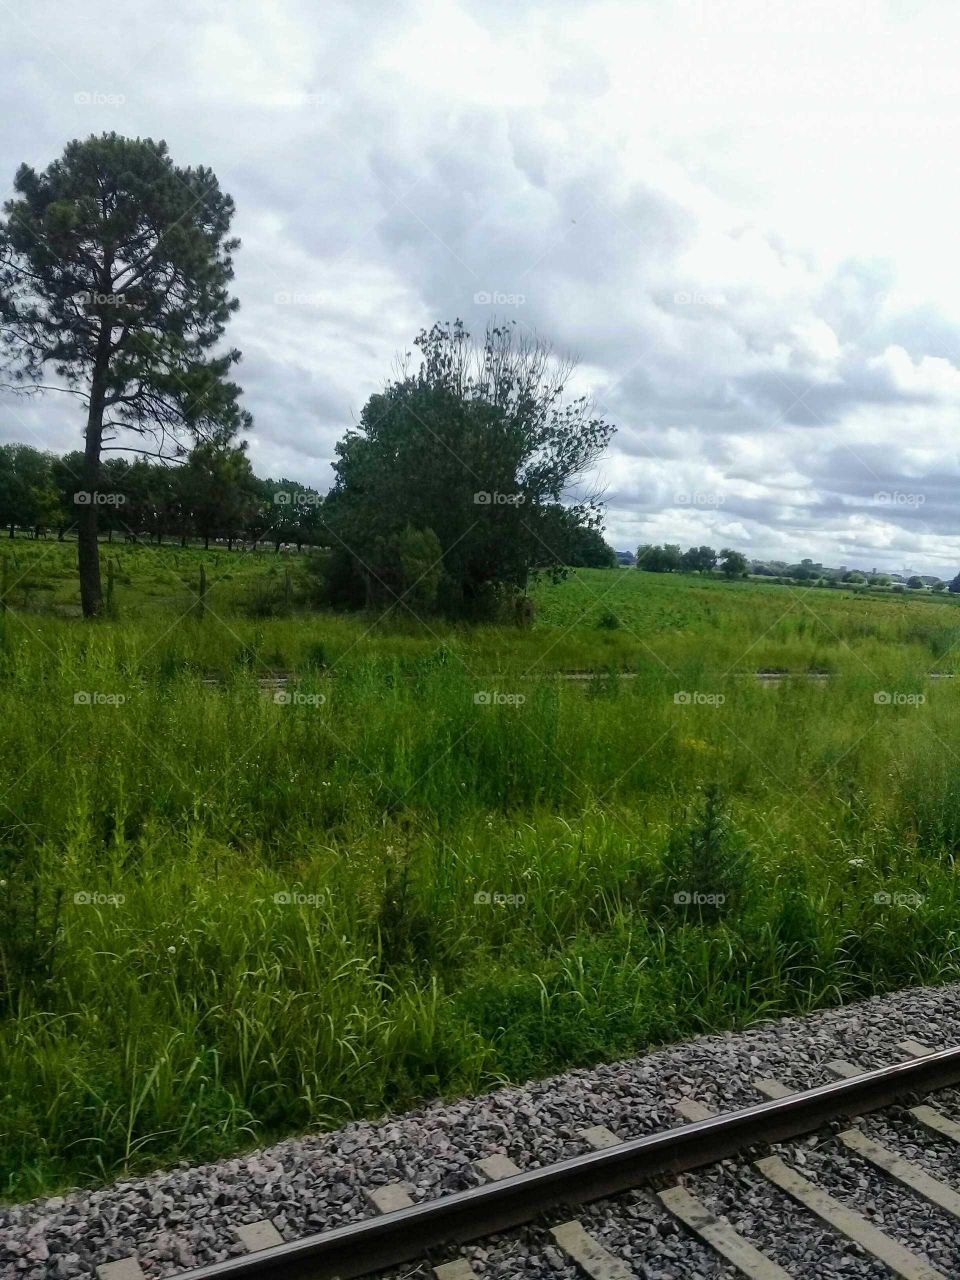 campo sembrado a la vera del ferrocarril.